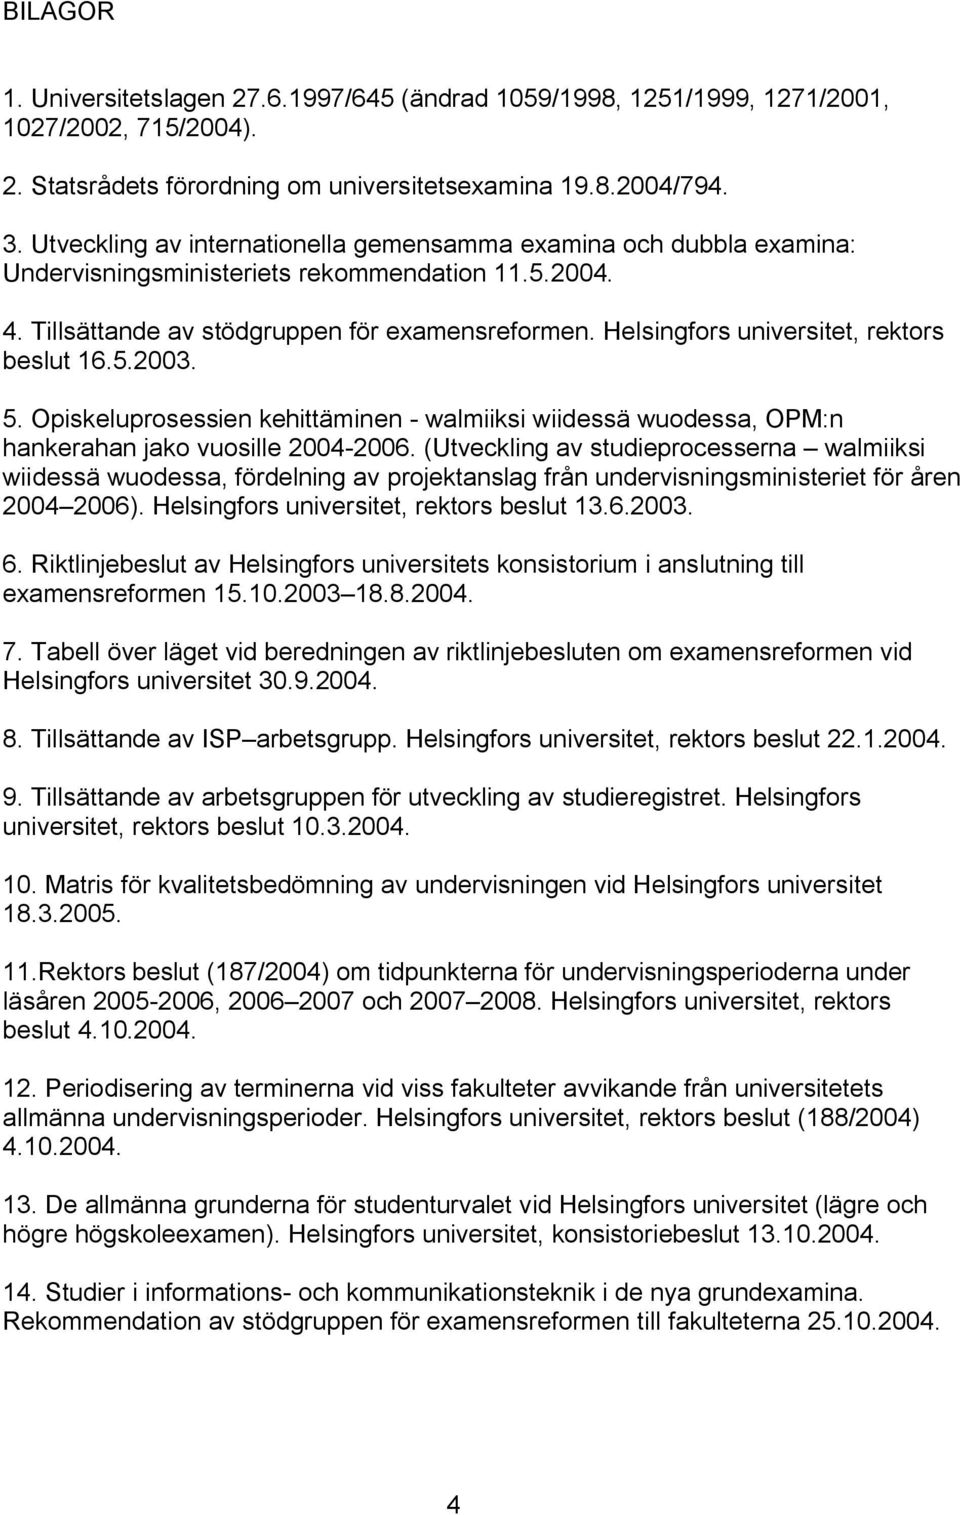 Helsingfors universitet, rektors beslut 16.5.2003. 5. Opiskeluprosessien kehittäminen walmiiksi wiidessä wuodessa, OPM:n hankerahan jako vuosille 2004 2006.